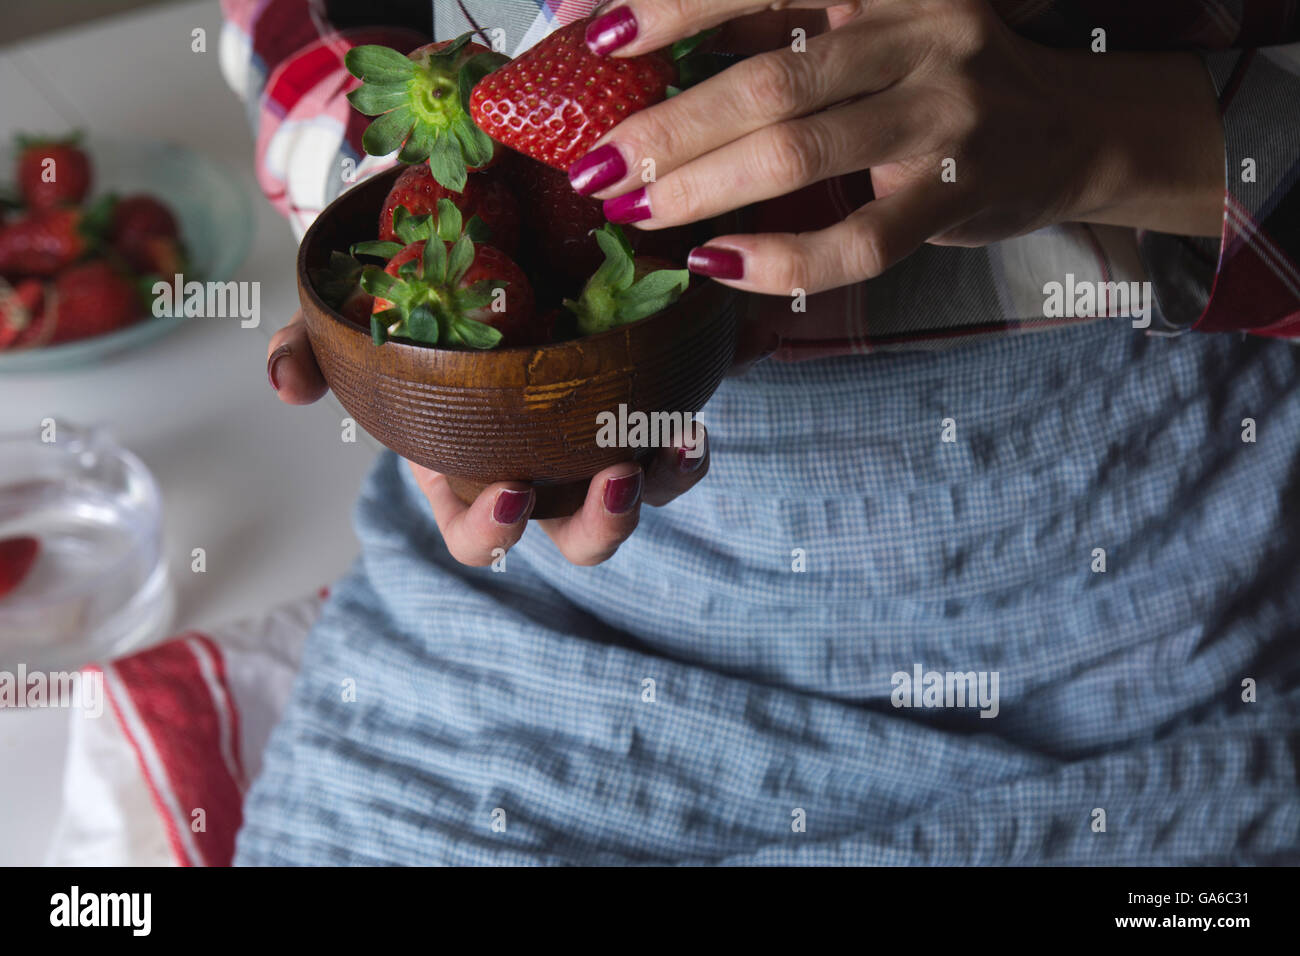 Coppa di fragole nelle mani di una donna con grembiule, seduti a tavola Foto Stock